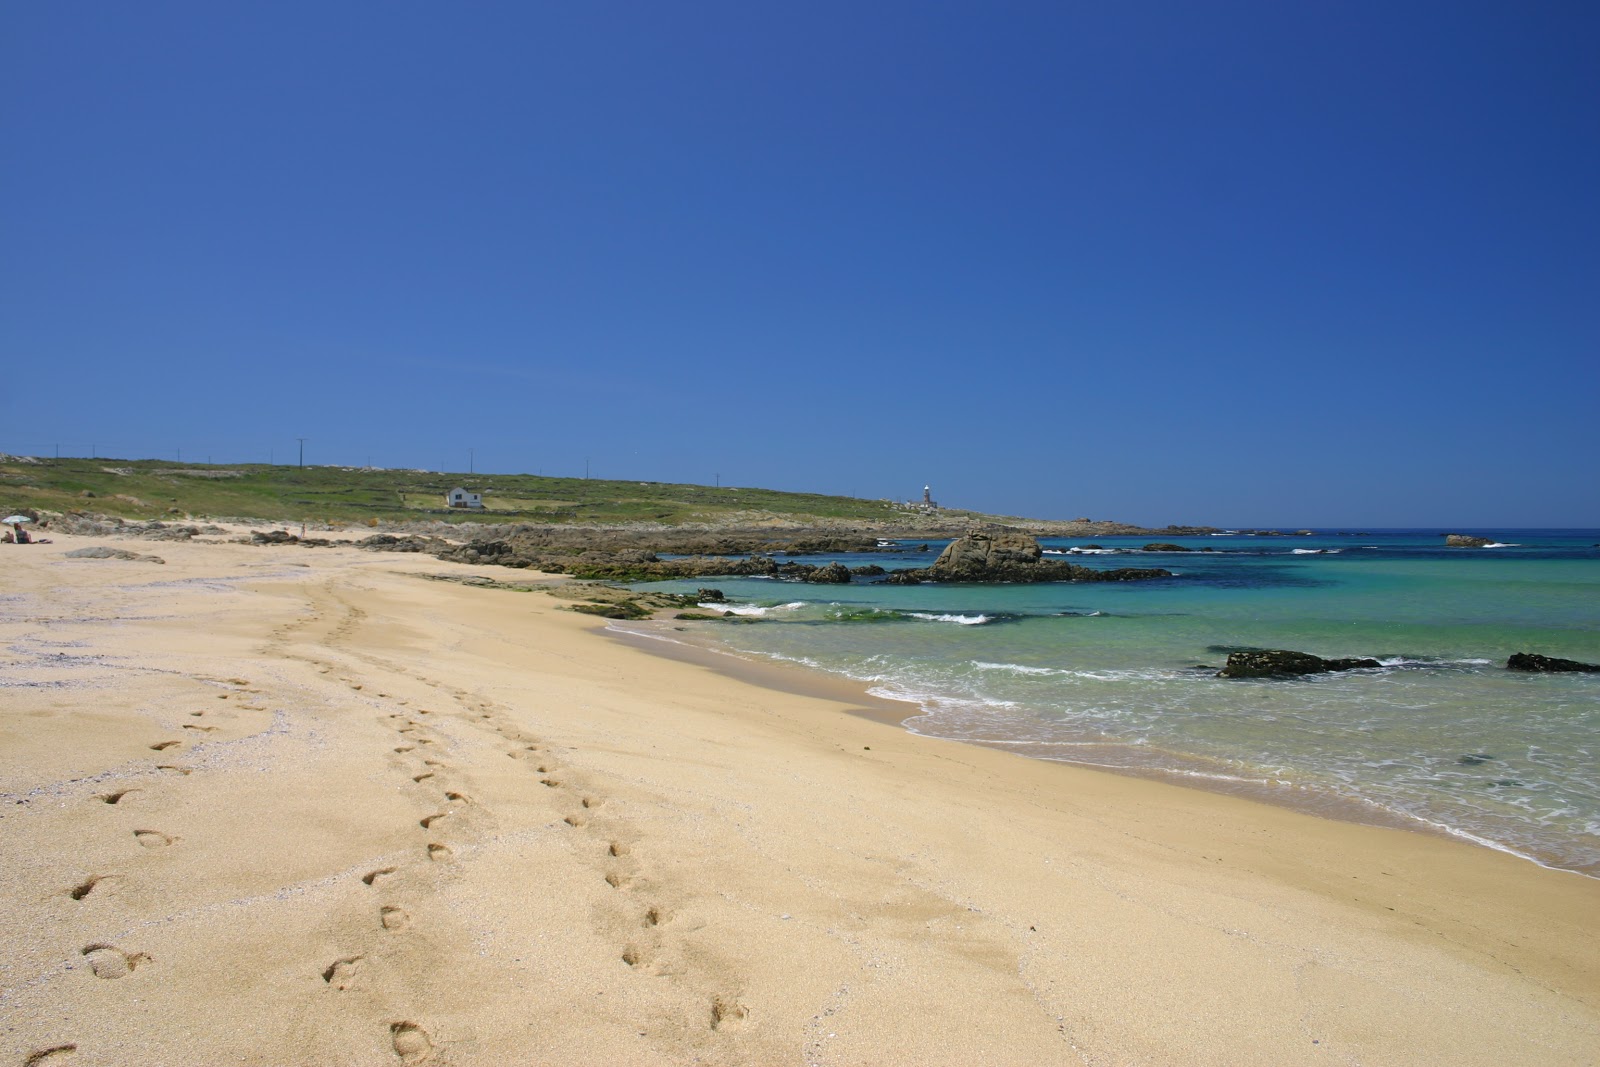 Fotografie cu Balieiros beach cu o suprafață de nisip fin strălucitor